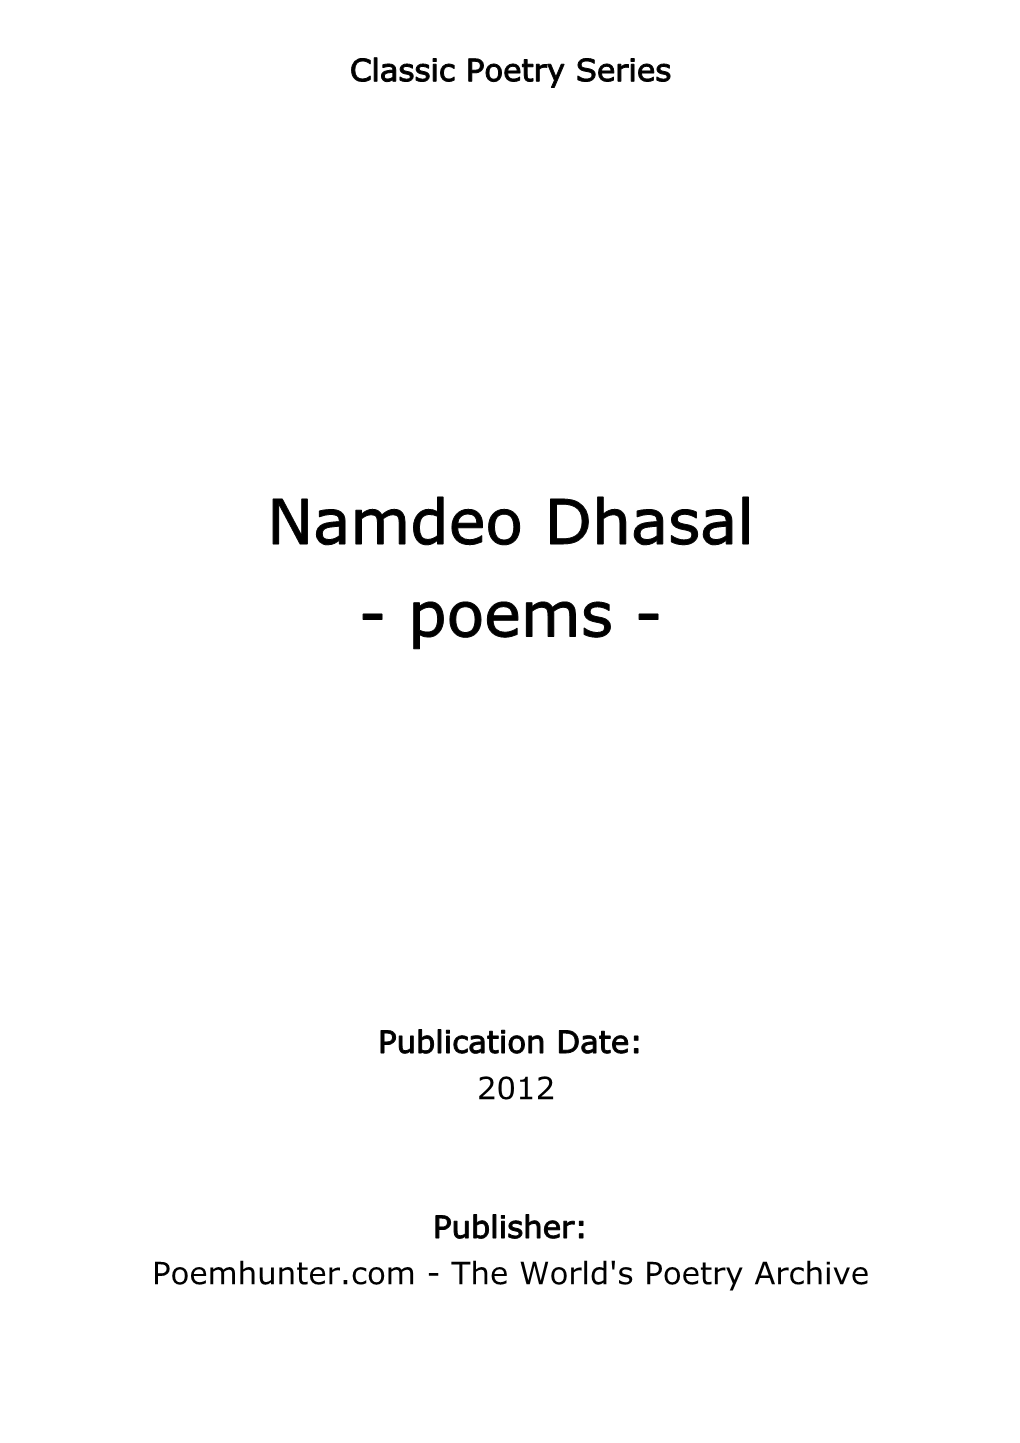 Namdeo Dhasal - Poems